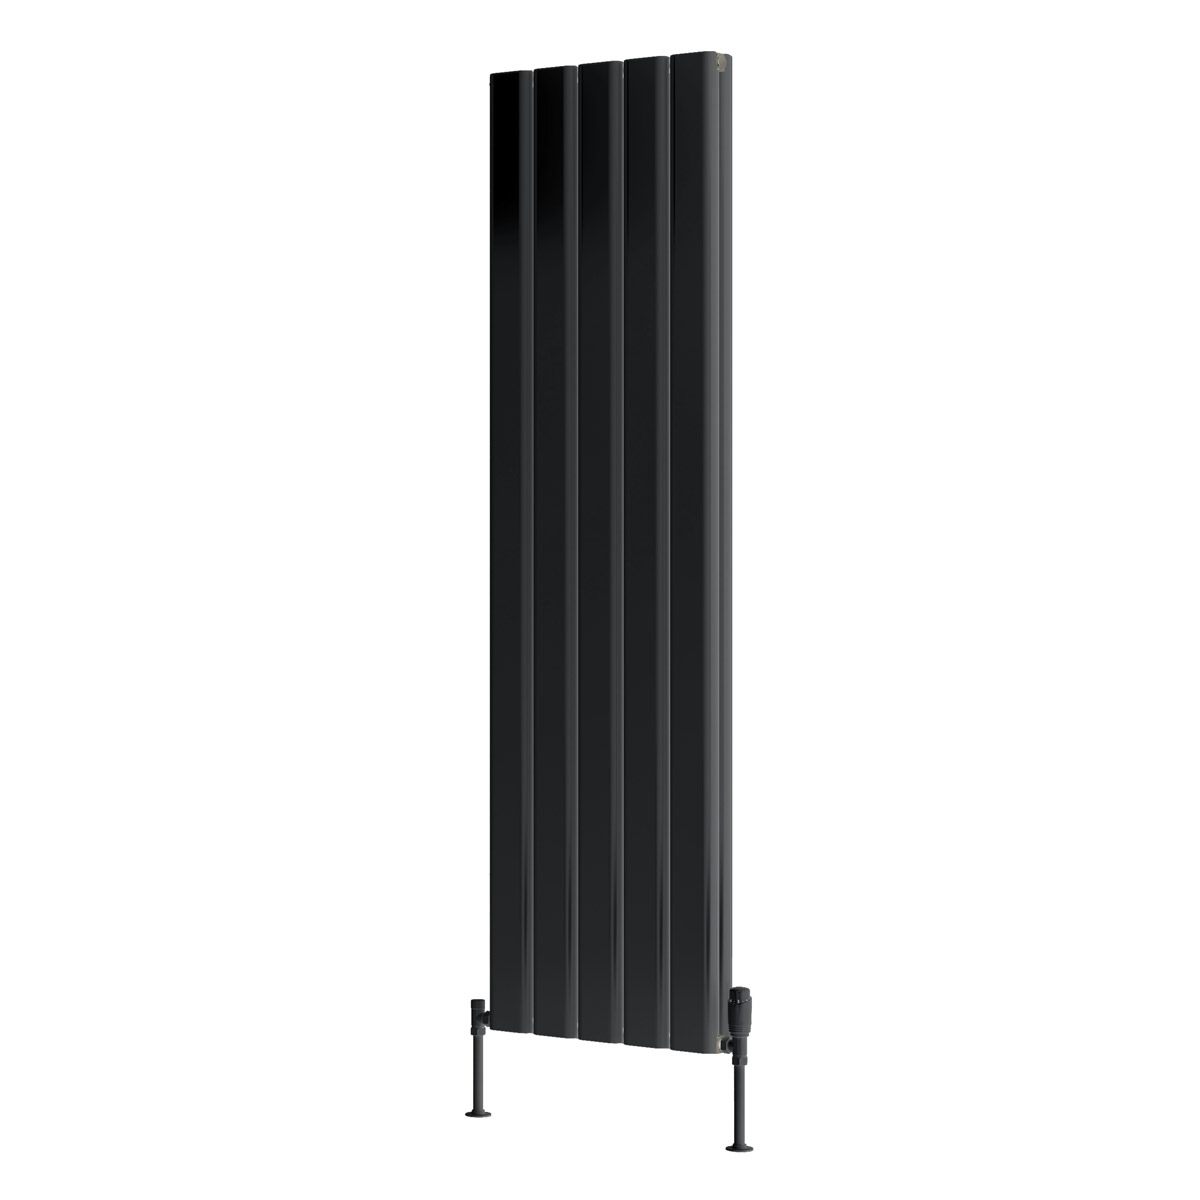 Reina Vicari anthracite grey double vertical aluminium designer radiator 1800 x 400